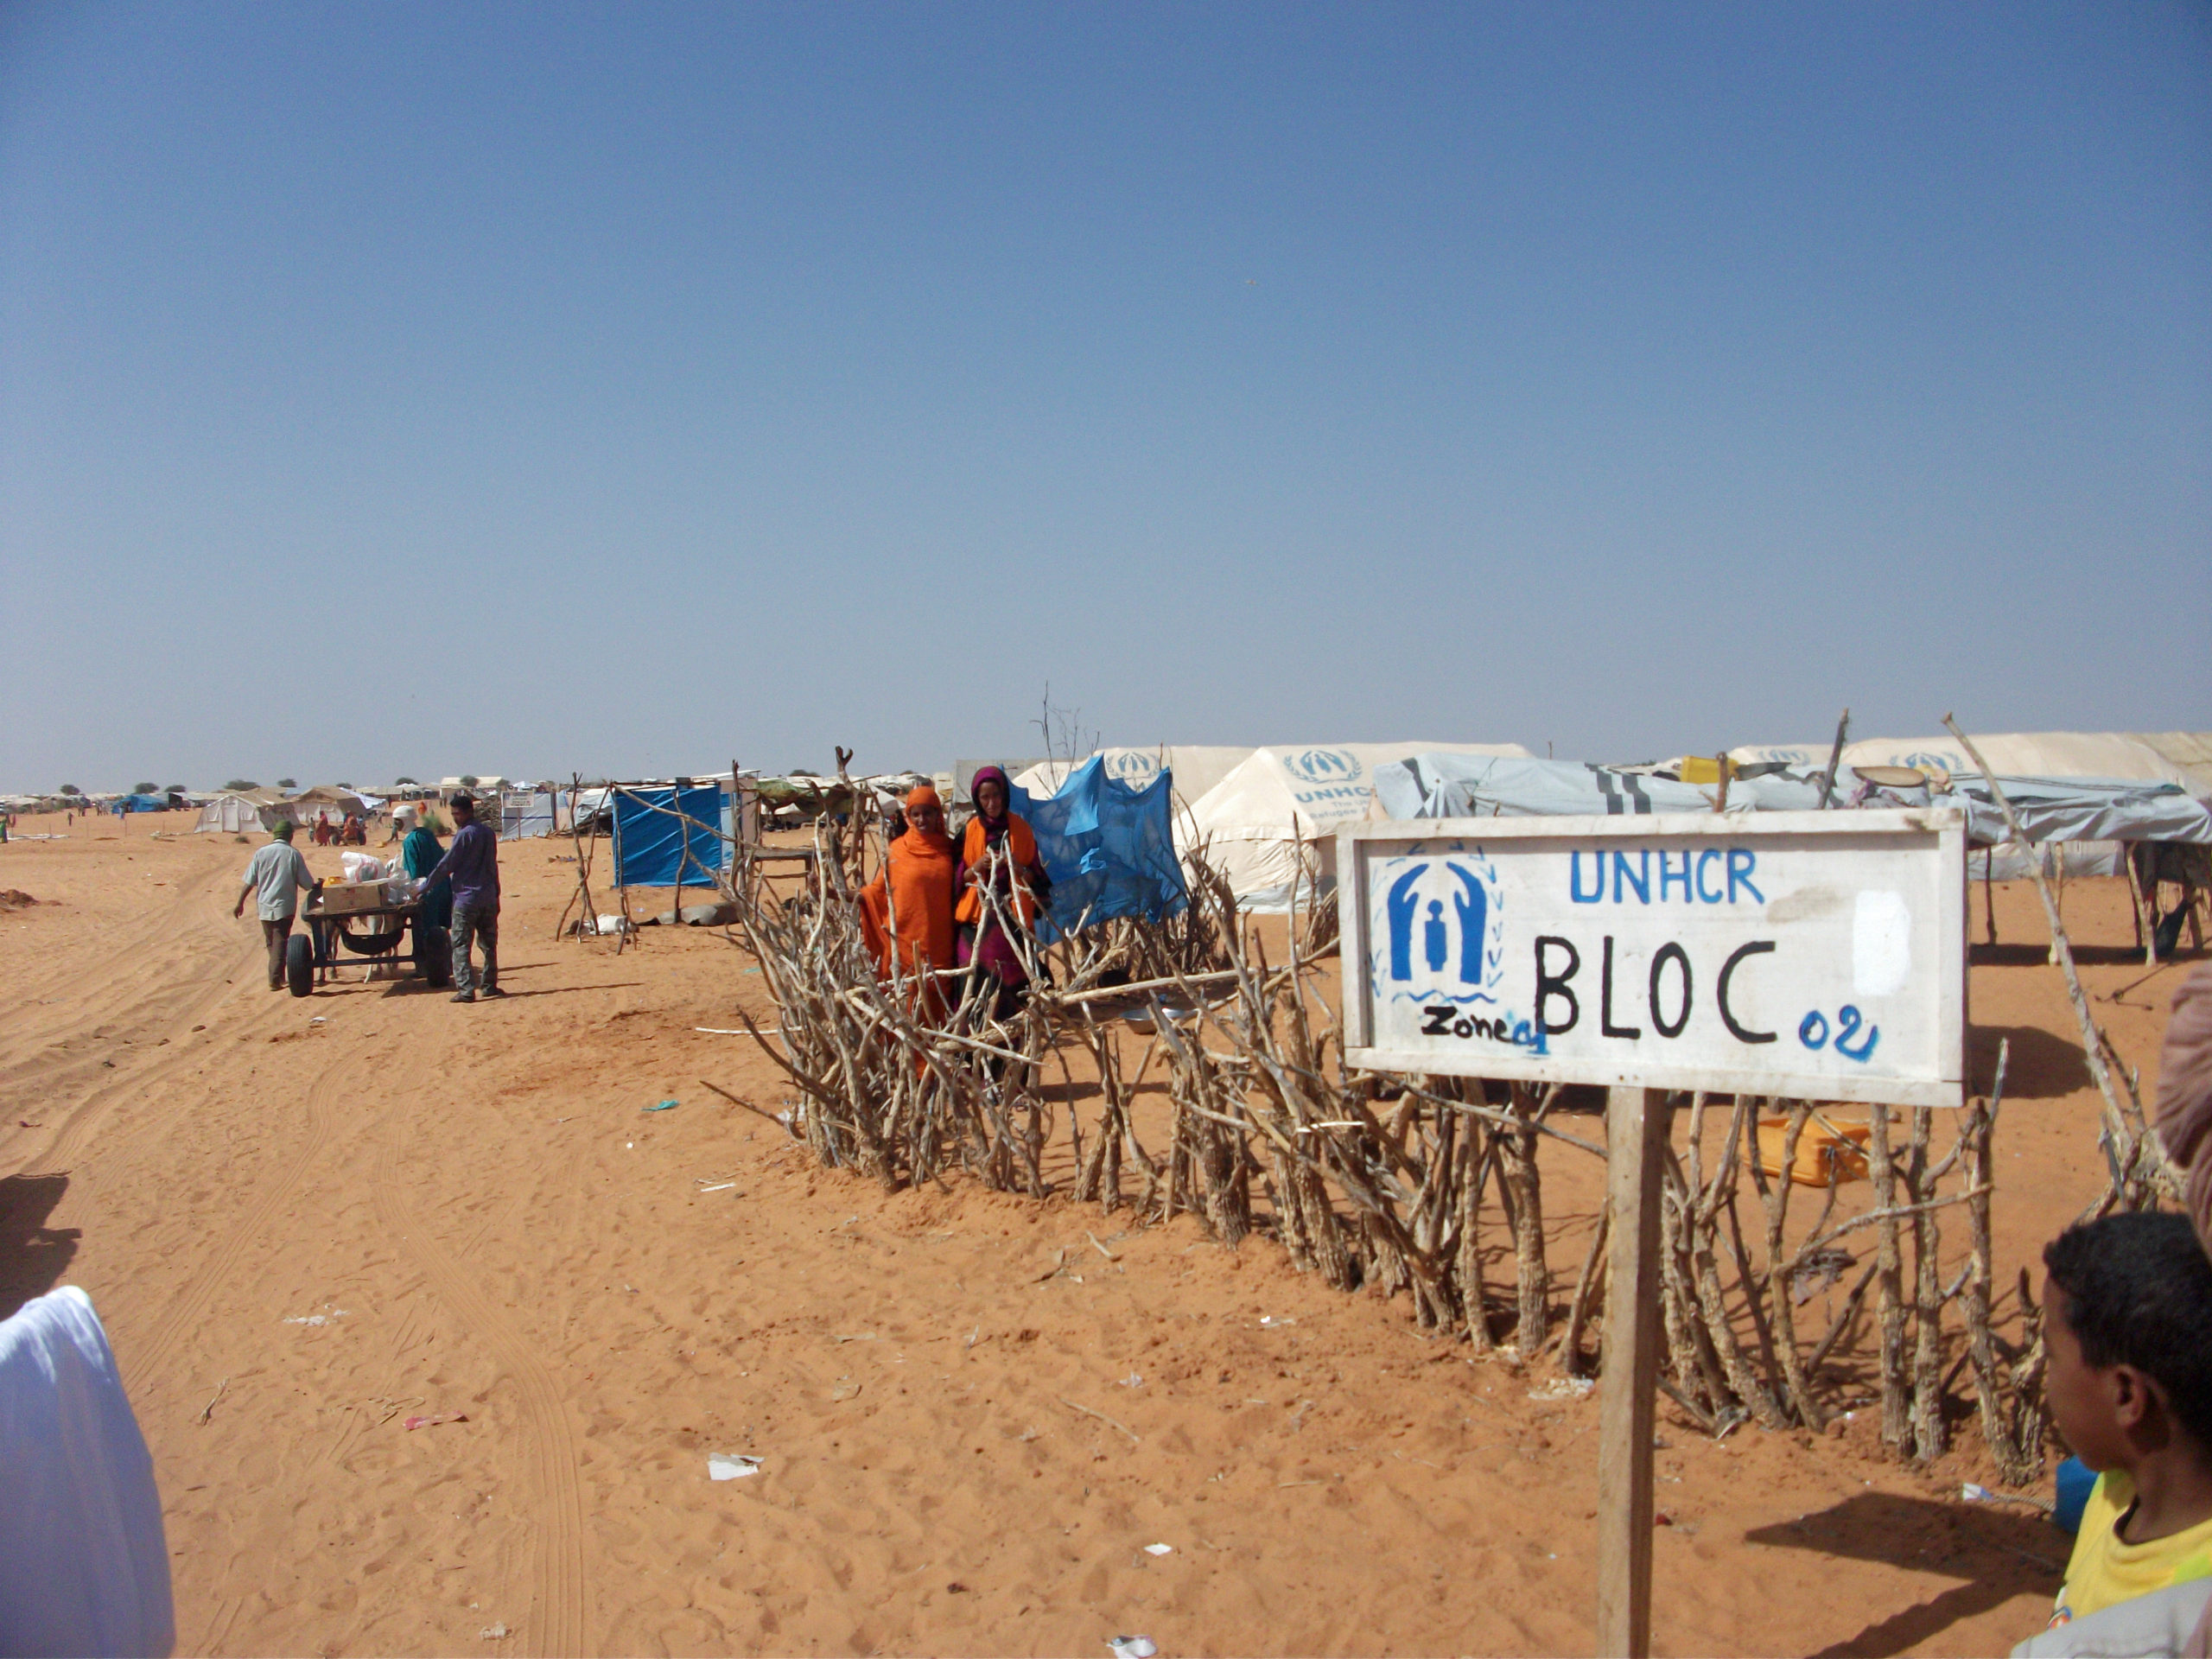 En flyktningleir i et ørkenområde.